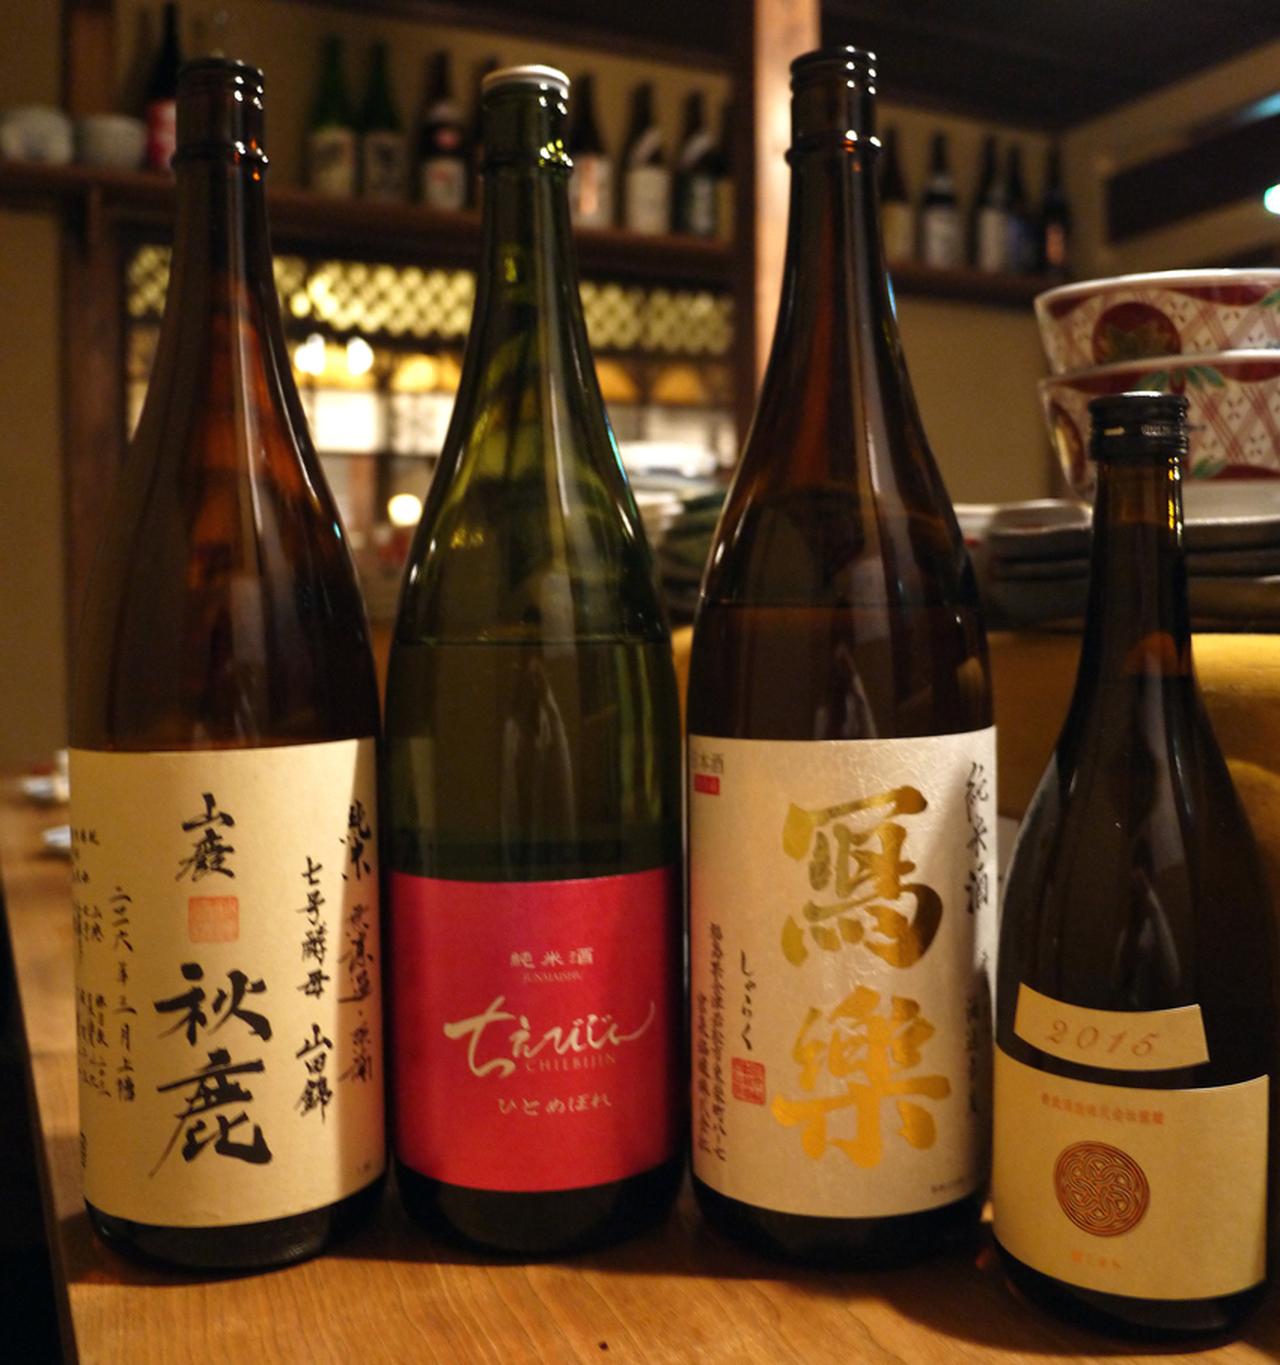 人気の新政、冩楽を含む 日本酒が飲み放題